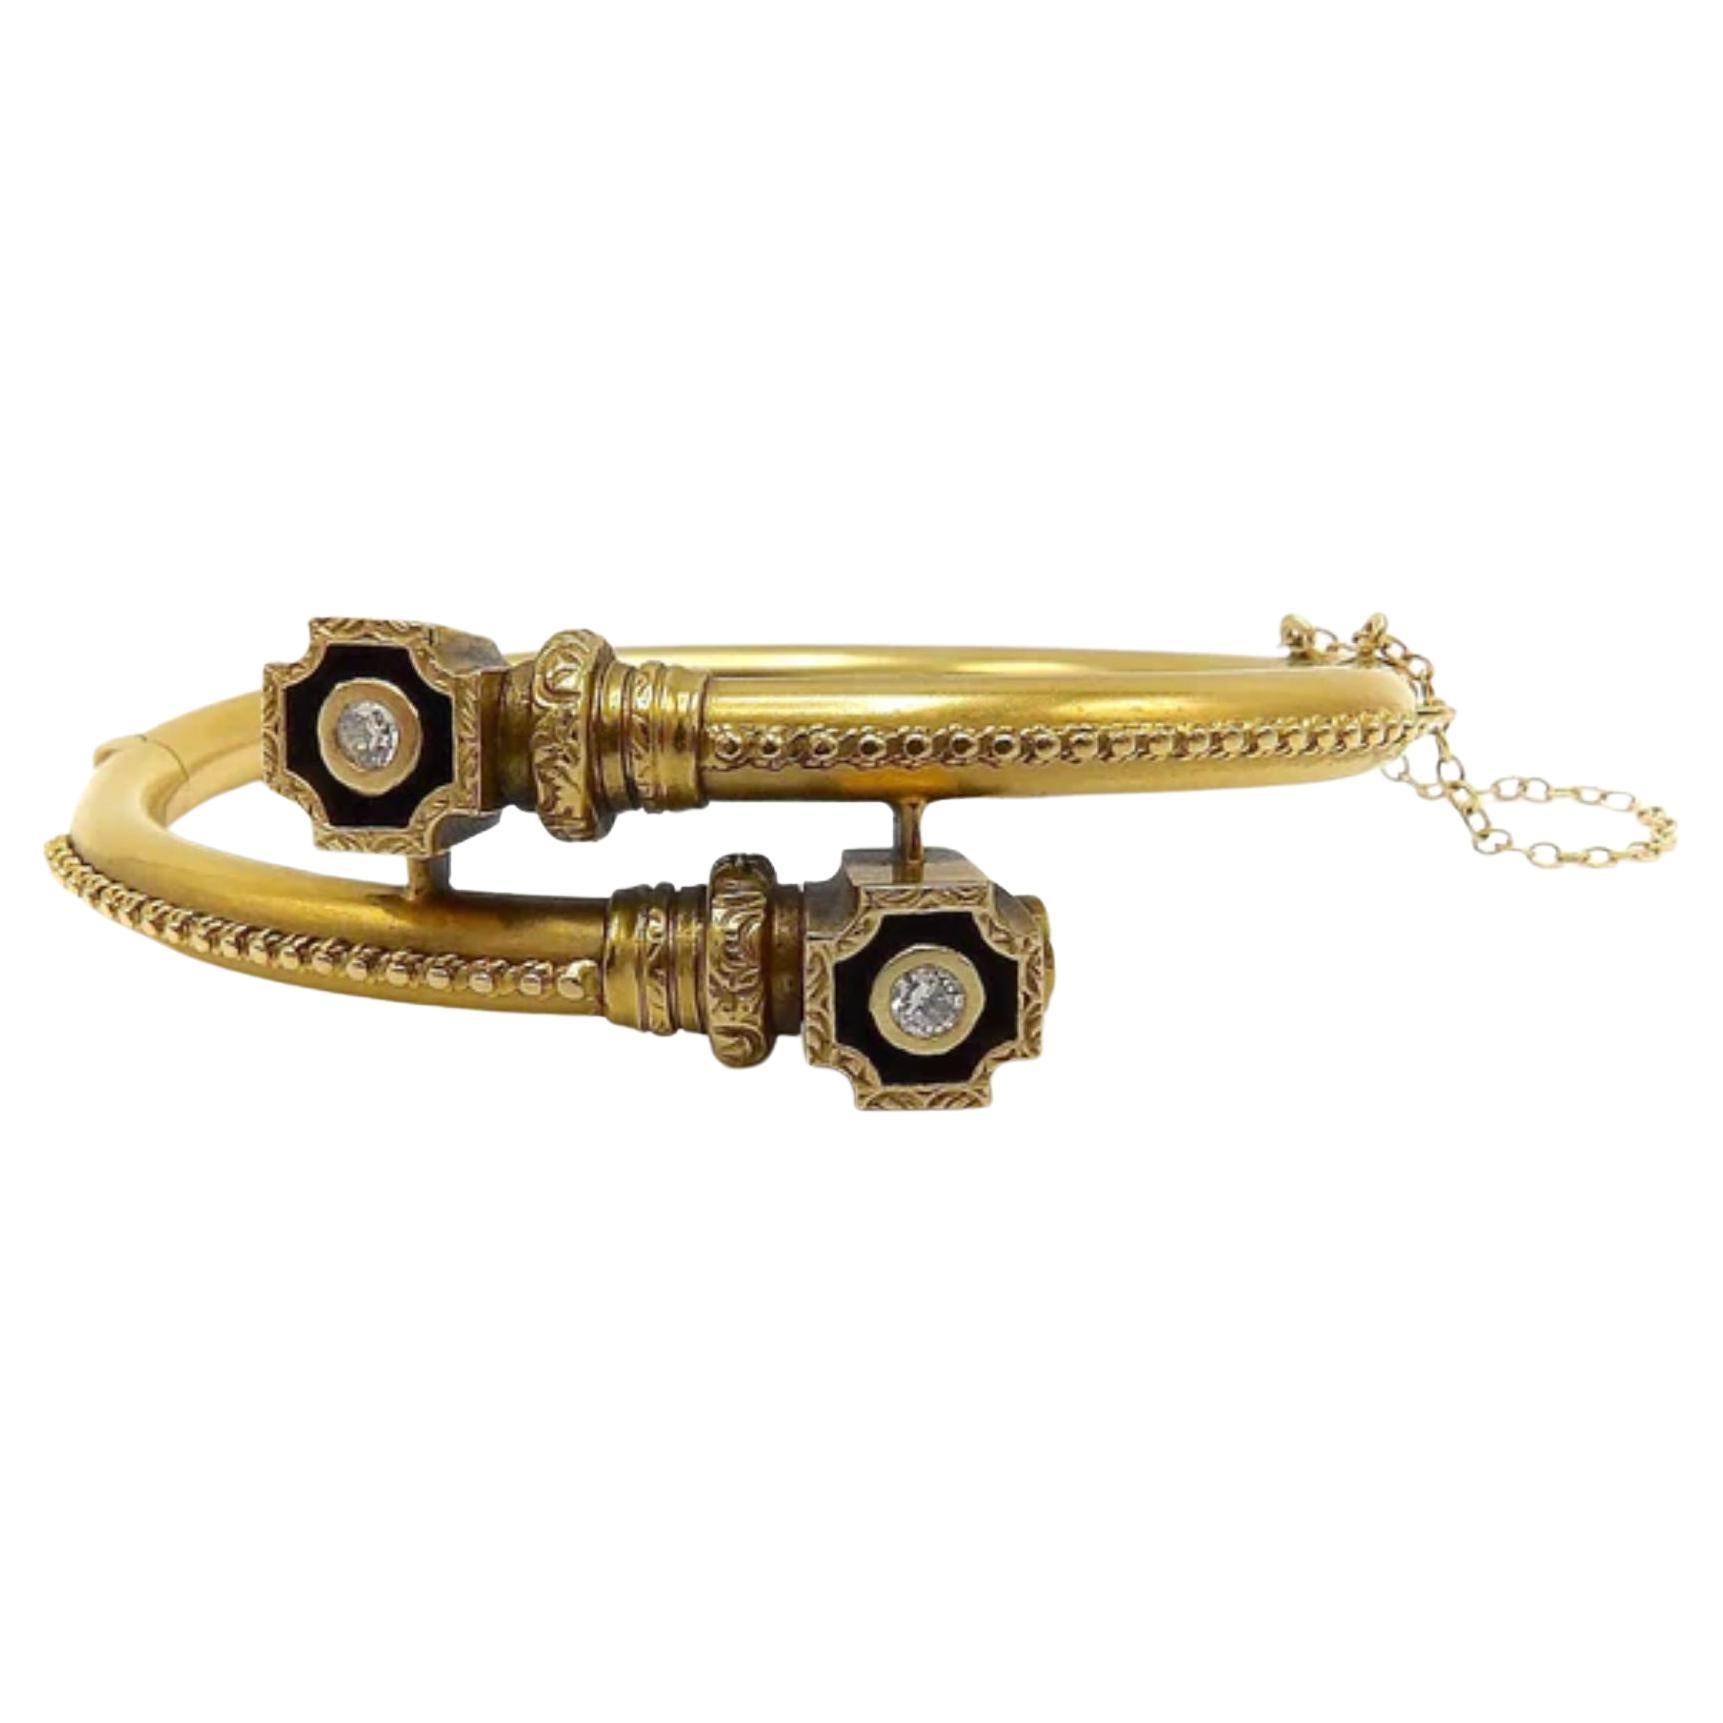 Dies ist eine atemberaubende Etruscan Revival Armband in 14k Gold mit Diamanten und exquisite Gold Details. Es hat ein Bypass-Design mit dekorativen Linien aus goldener Granulatperlen, die zu einer kreuzförmigen Schattenbox führen. Im Inneren